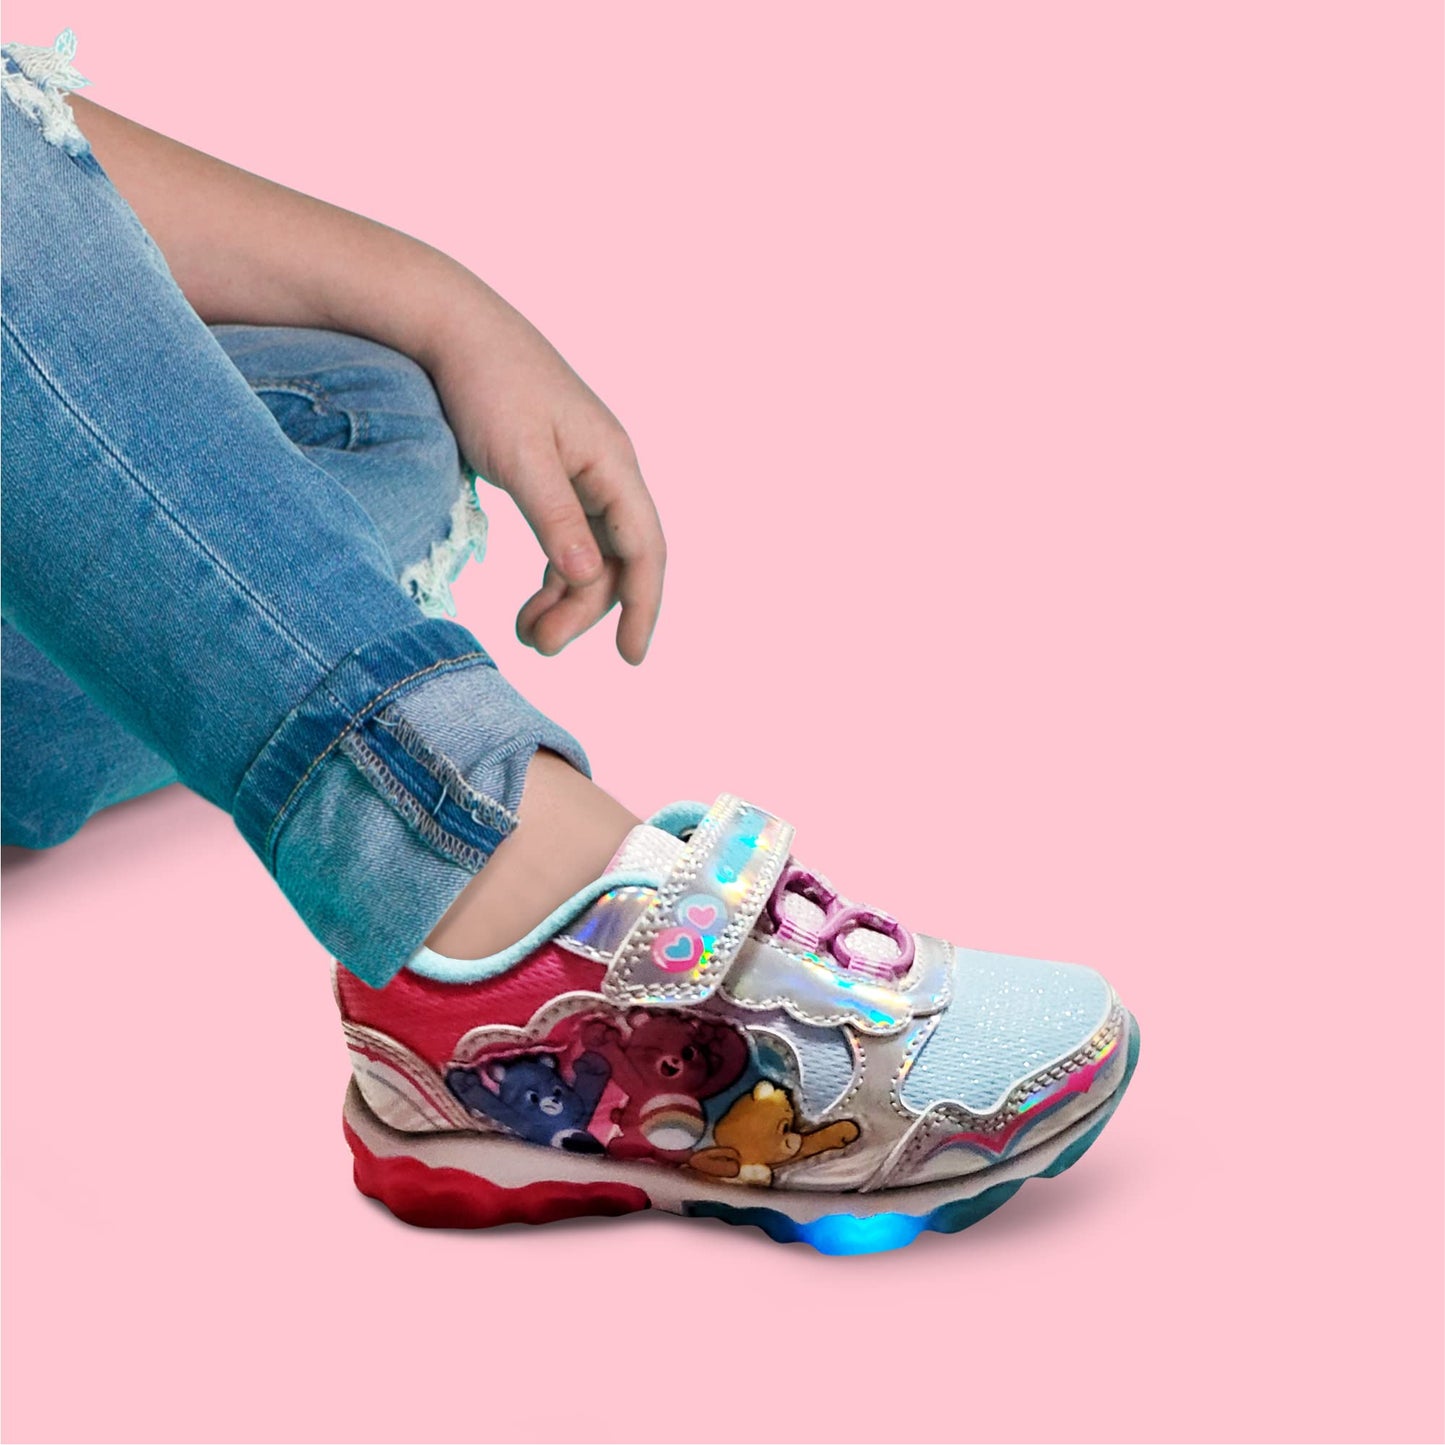 Care Bears Pink/Blue Girl's Lighted Athletic Sneaker (Toddler/Little Kid)